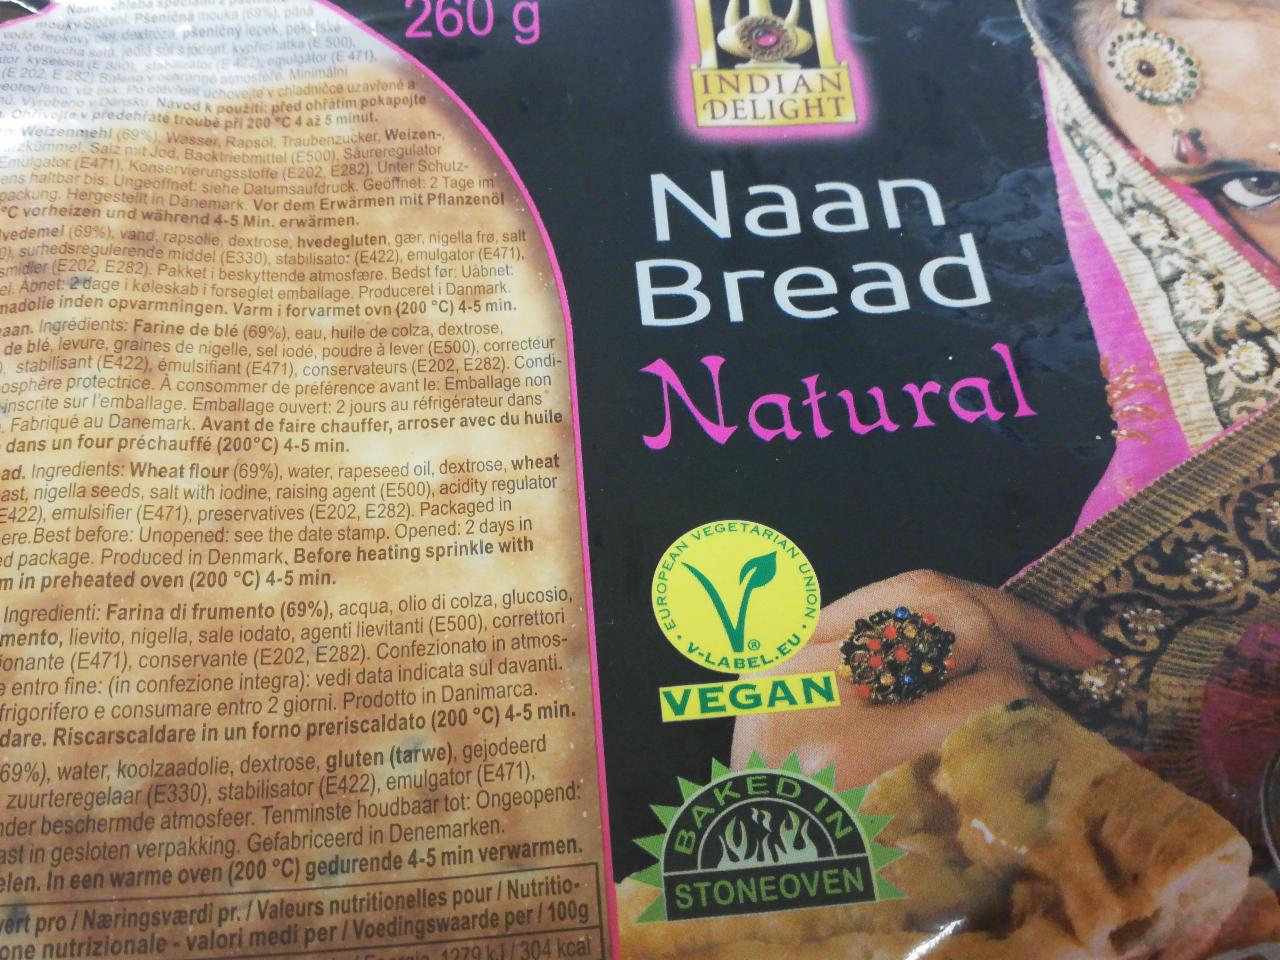 Fotografie - Naan bread natural Indian Delight